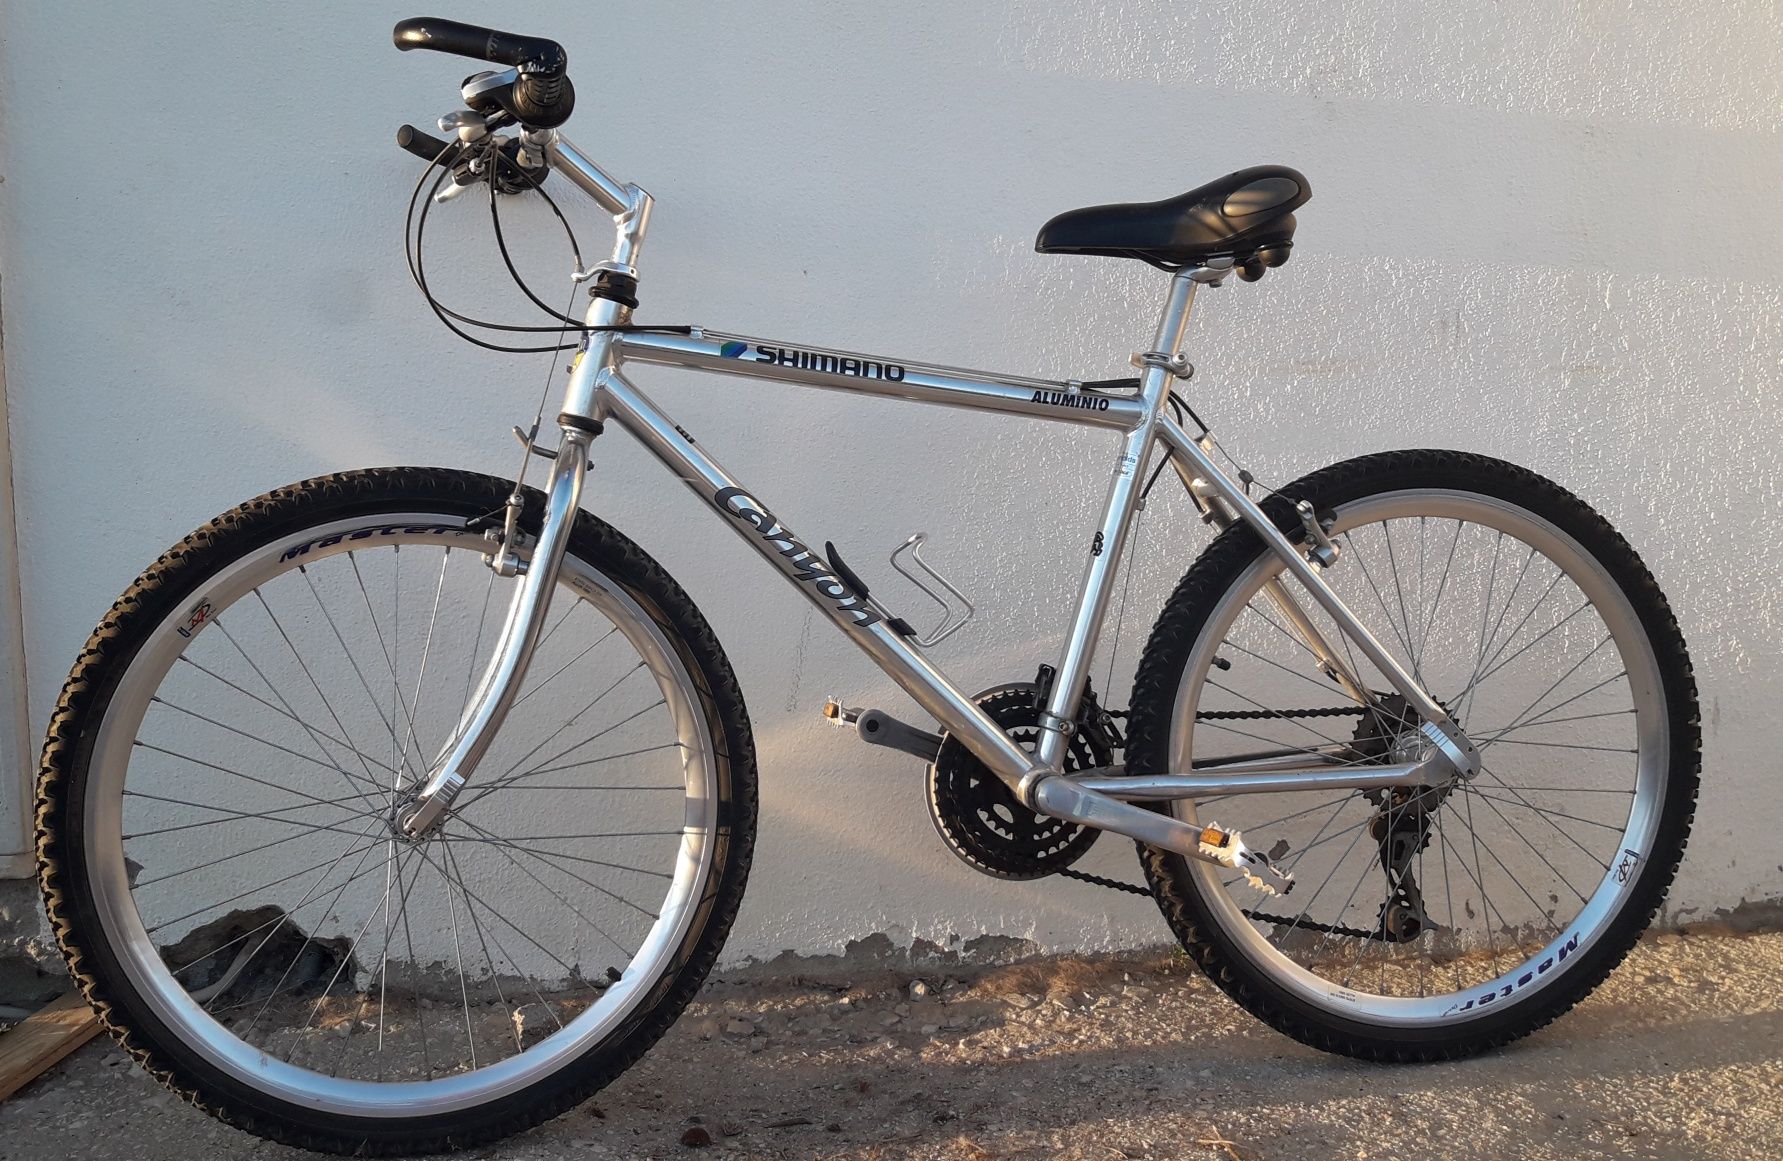 Bicicleta Shimano - toda em alumínio